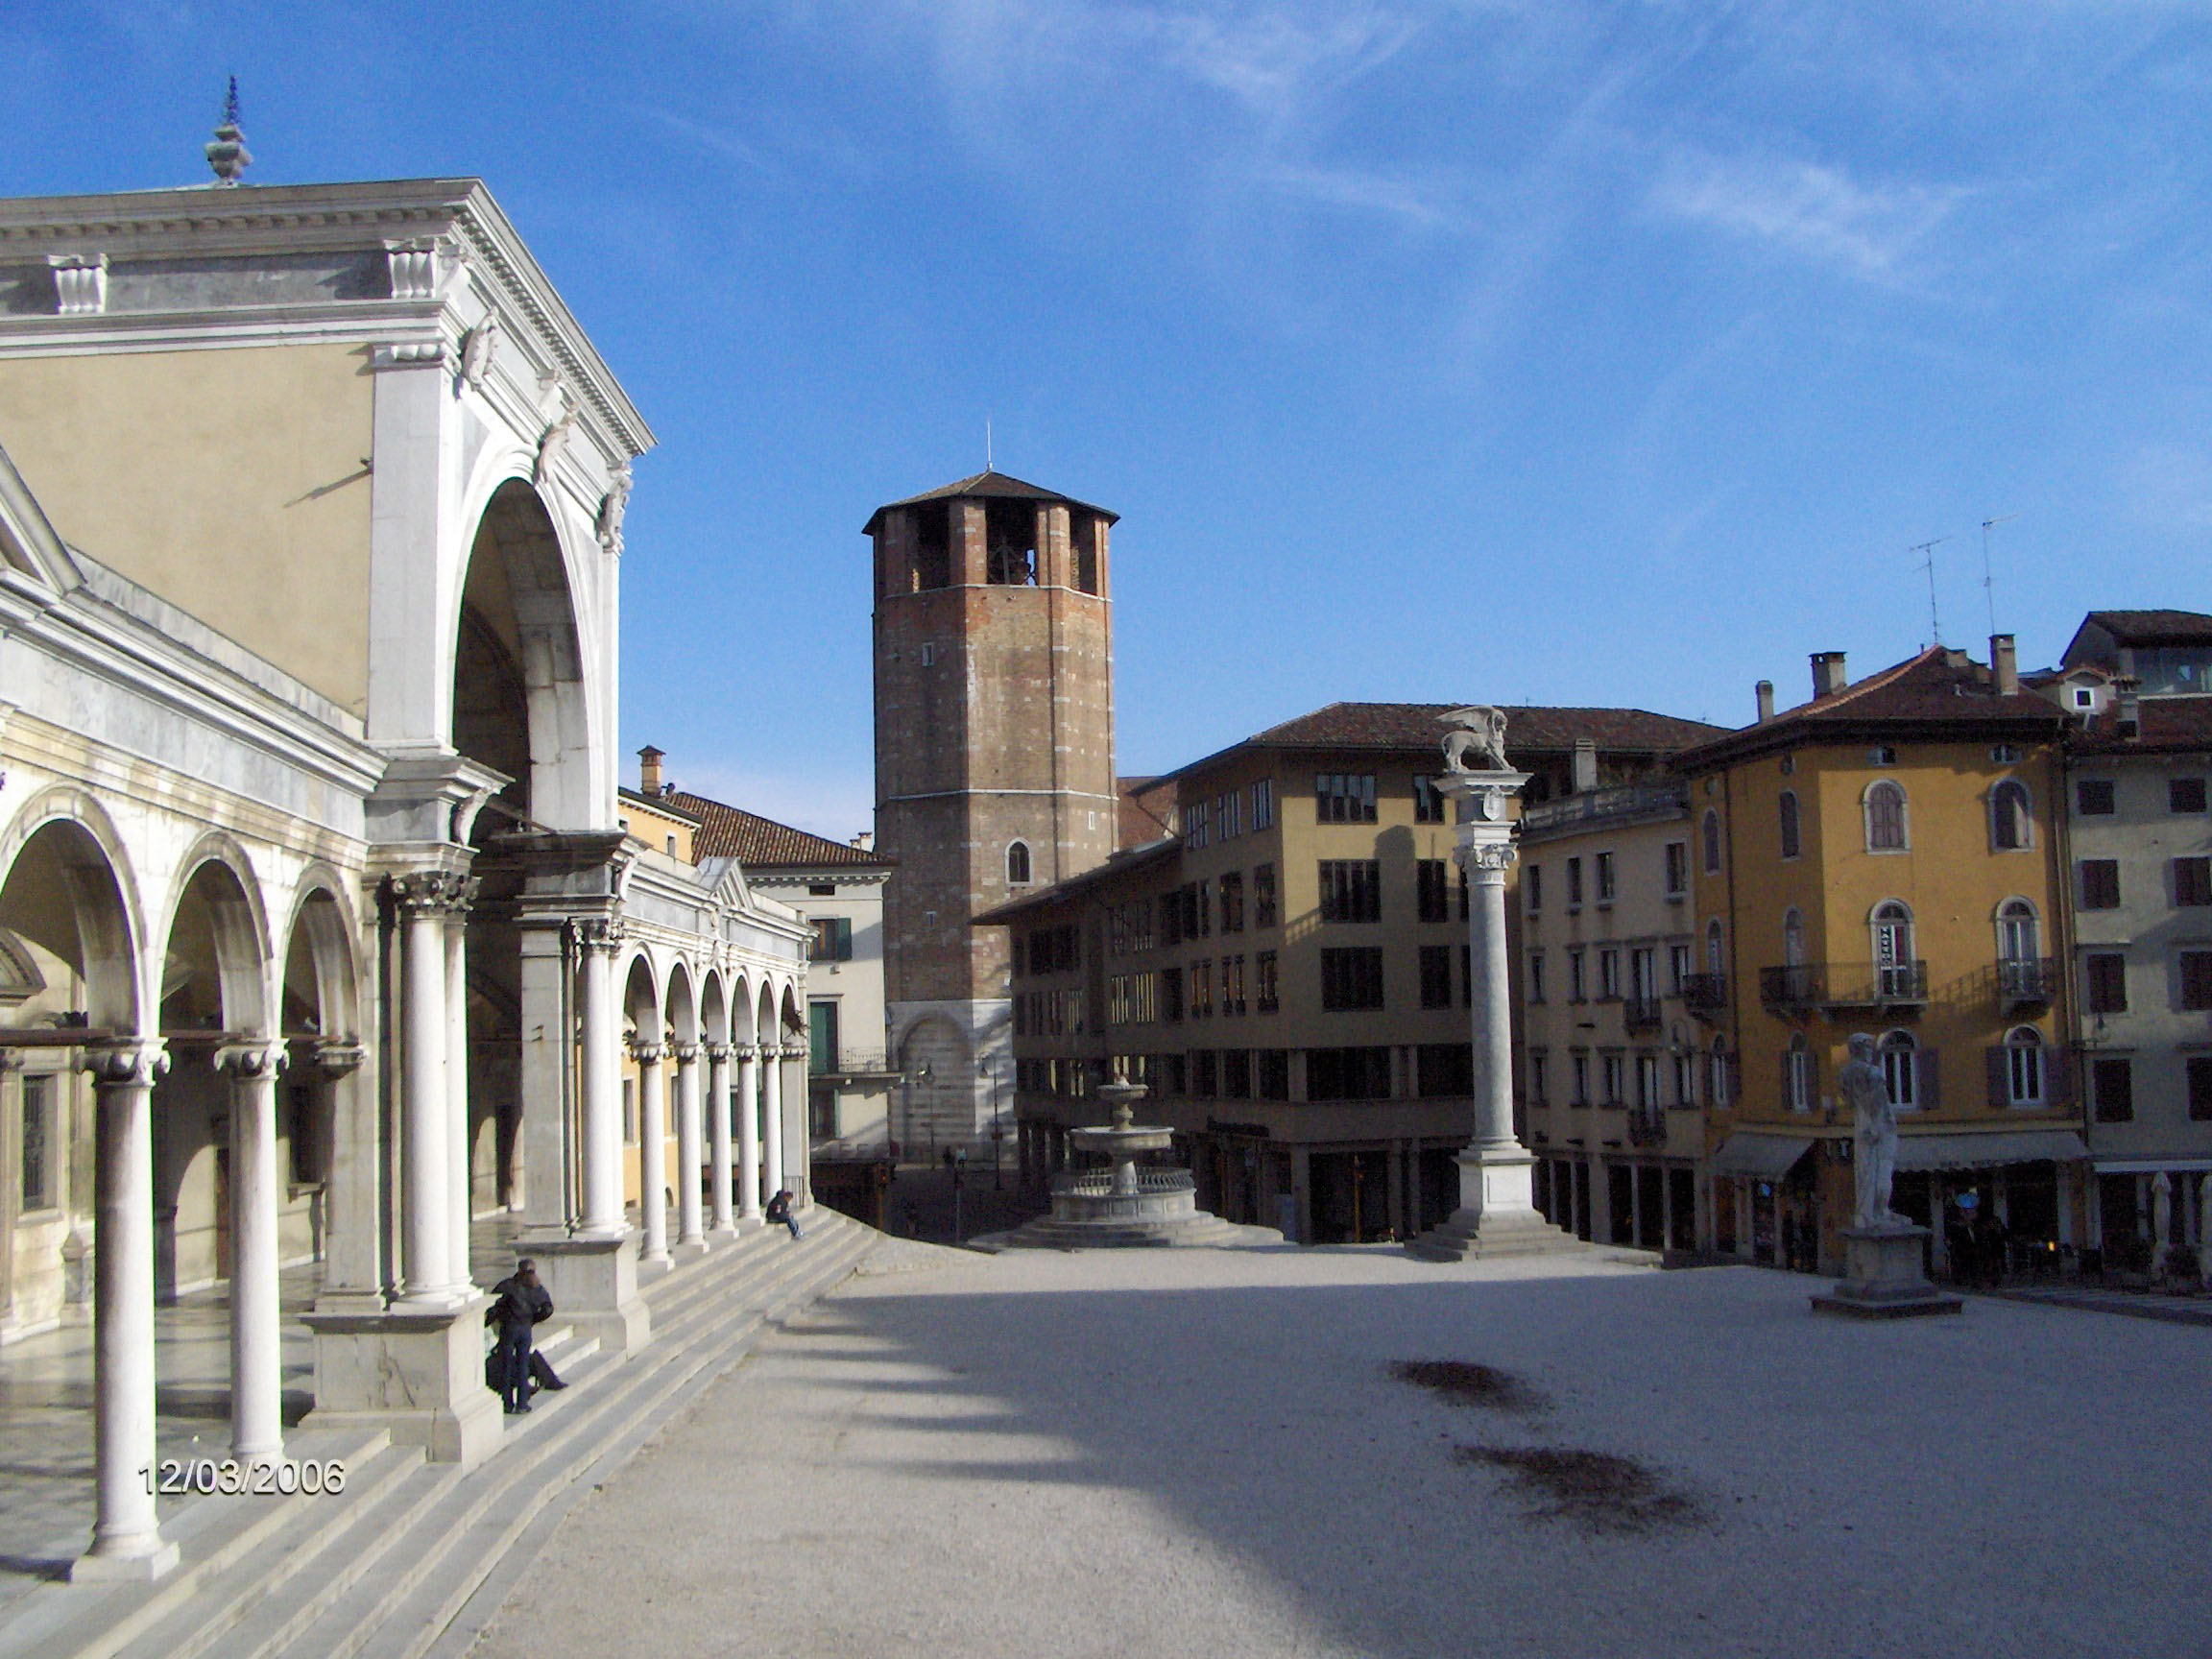 Piazza della Libertà and the Loggia di San Giovanni in Udine, Italy ...